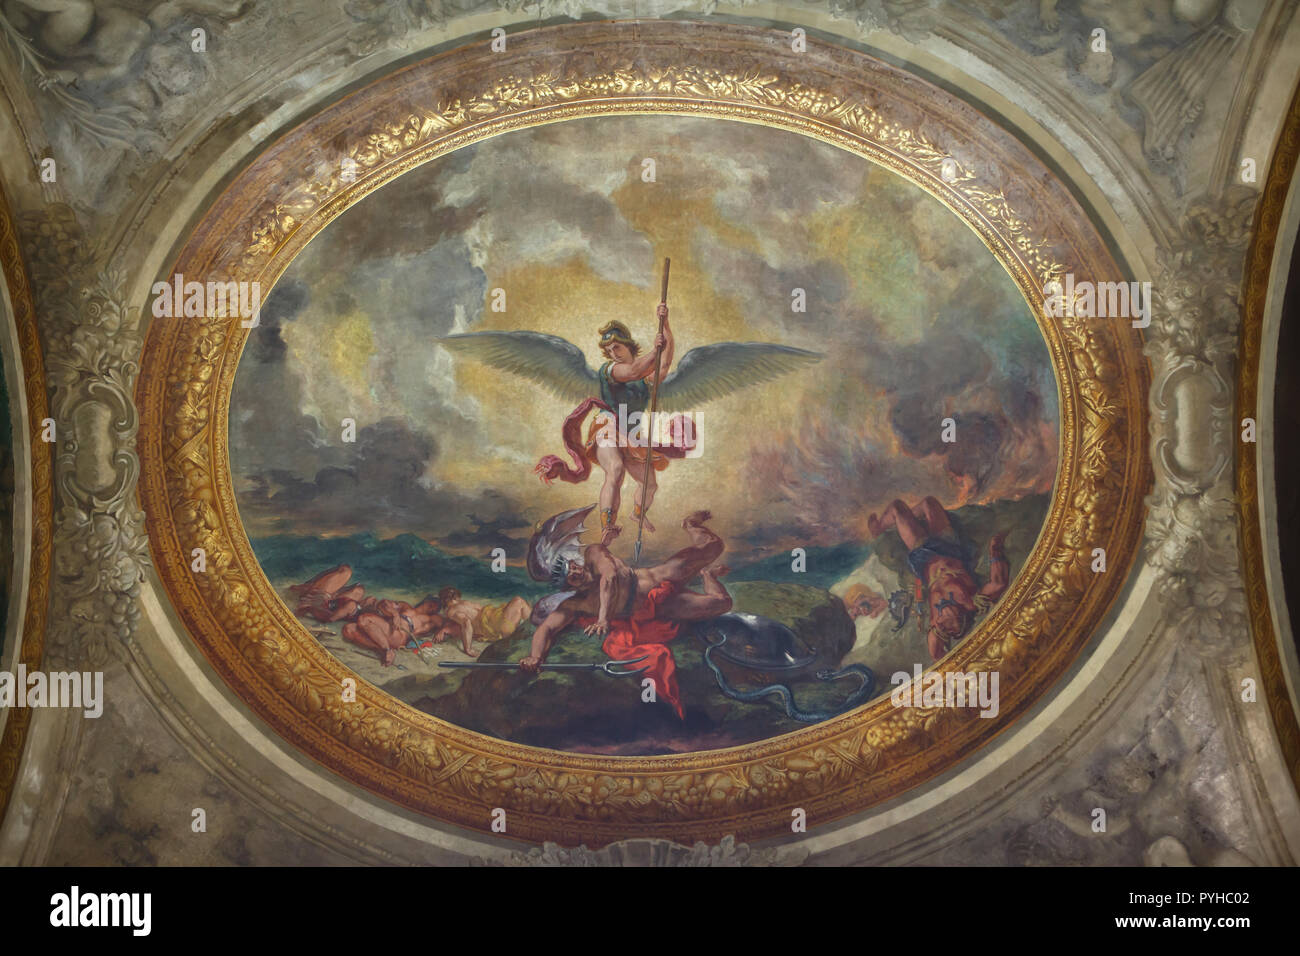 Erzengel Michael den Teufel besiegt. Wandbild Deckengemälde von Französischen romantischen Maler Eugène Delacroix (1855 - 1861) in der Kapelle der Heiligen Engel in der Kirche von Saint-Sulpice (Église Saint-Sulpice) in Paris, Frankreich. Stockfoto